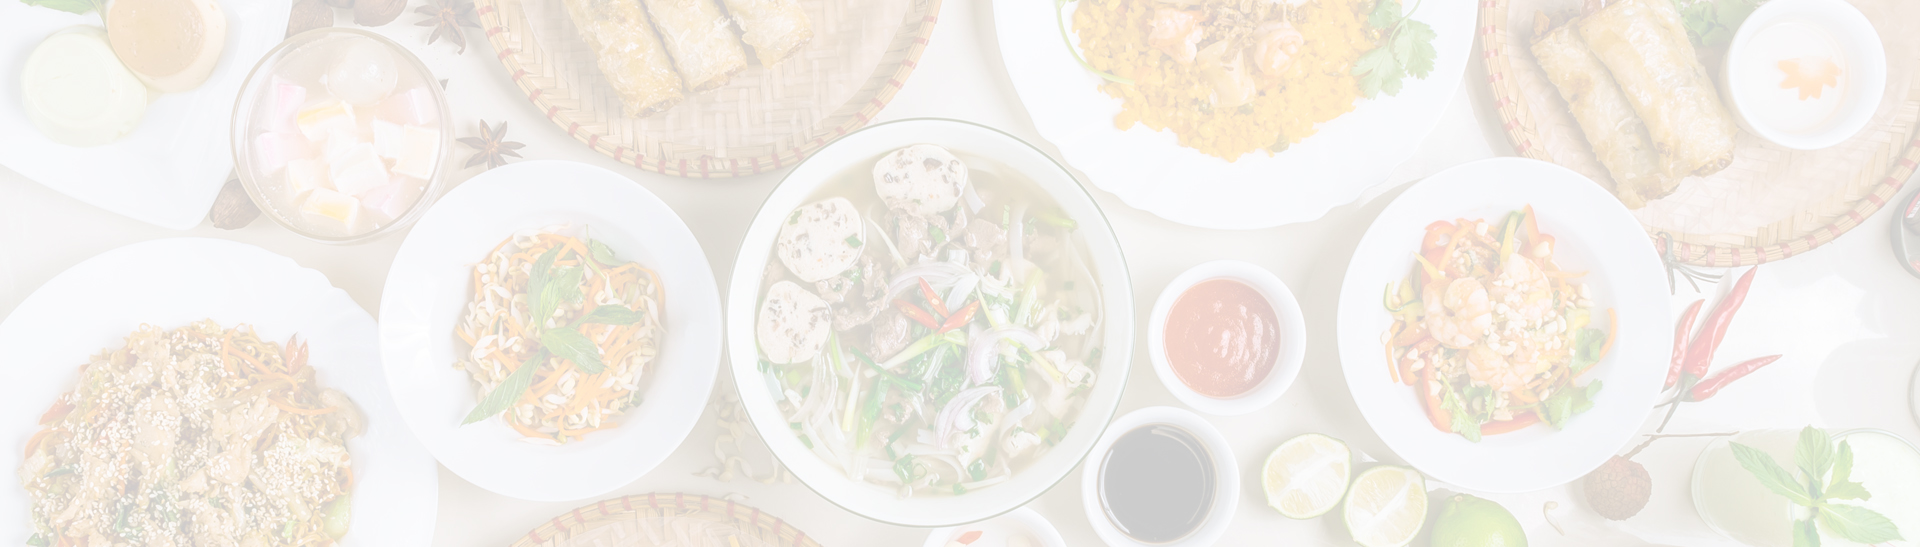 La cuisine vietnamienne